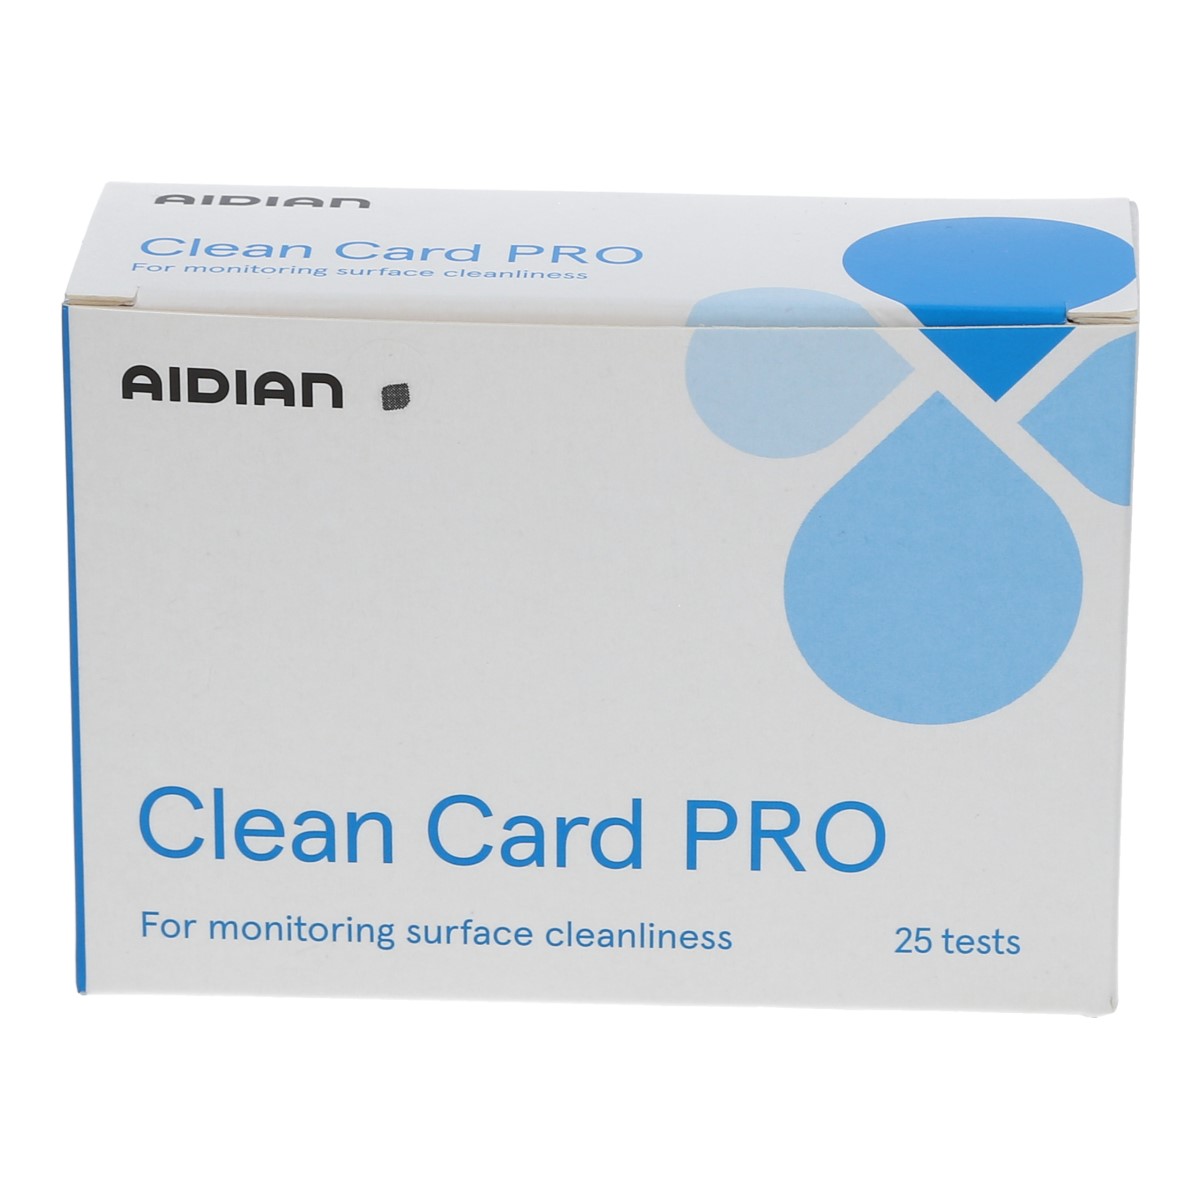 clean card keimindikatoren starter kit proteintest Karton 